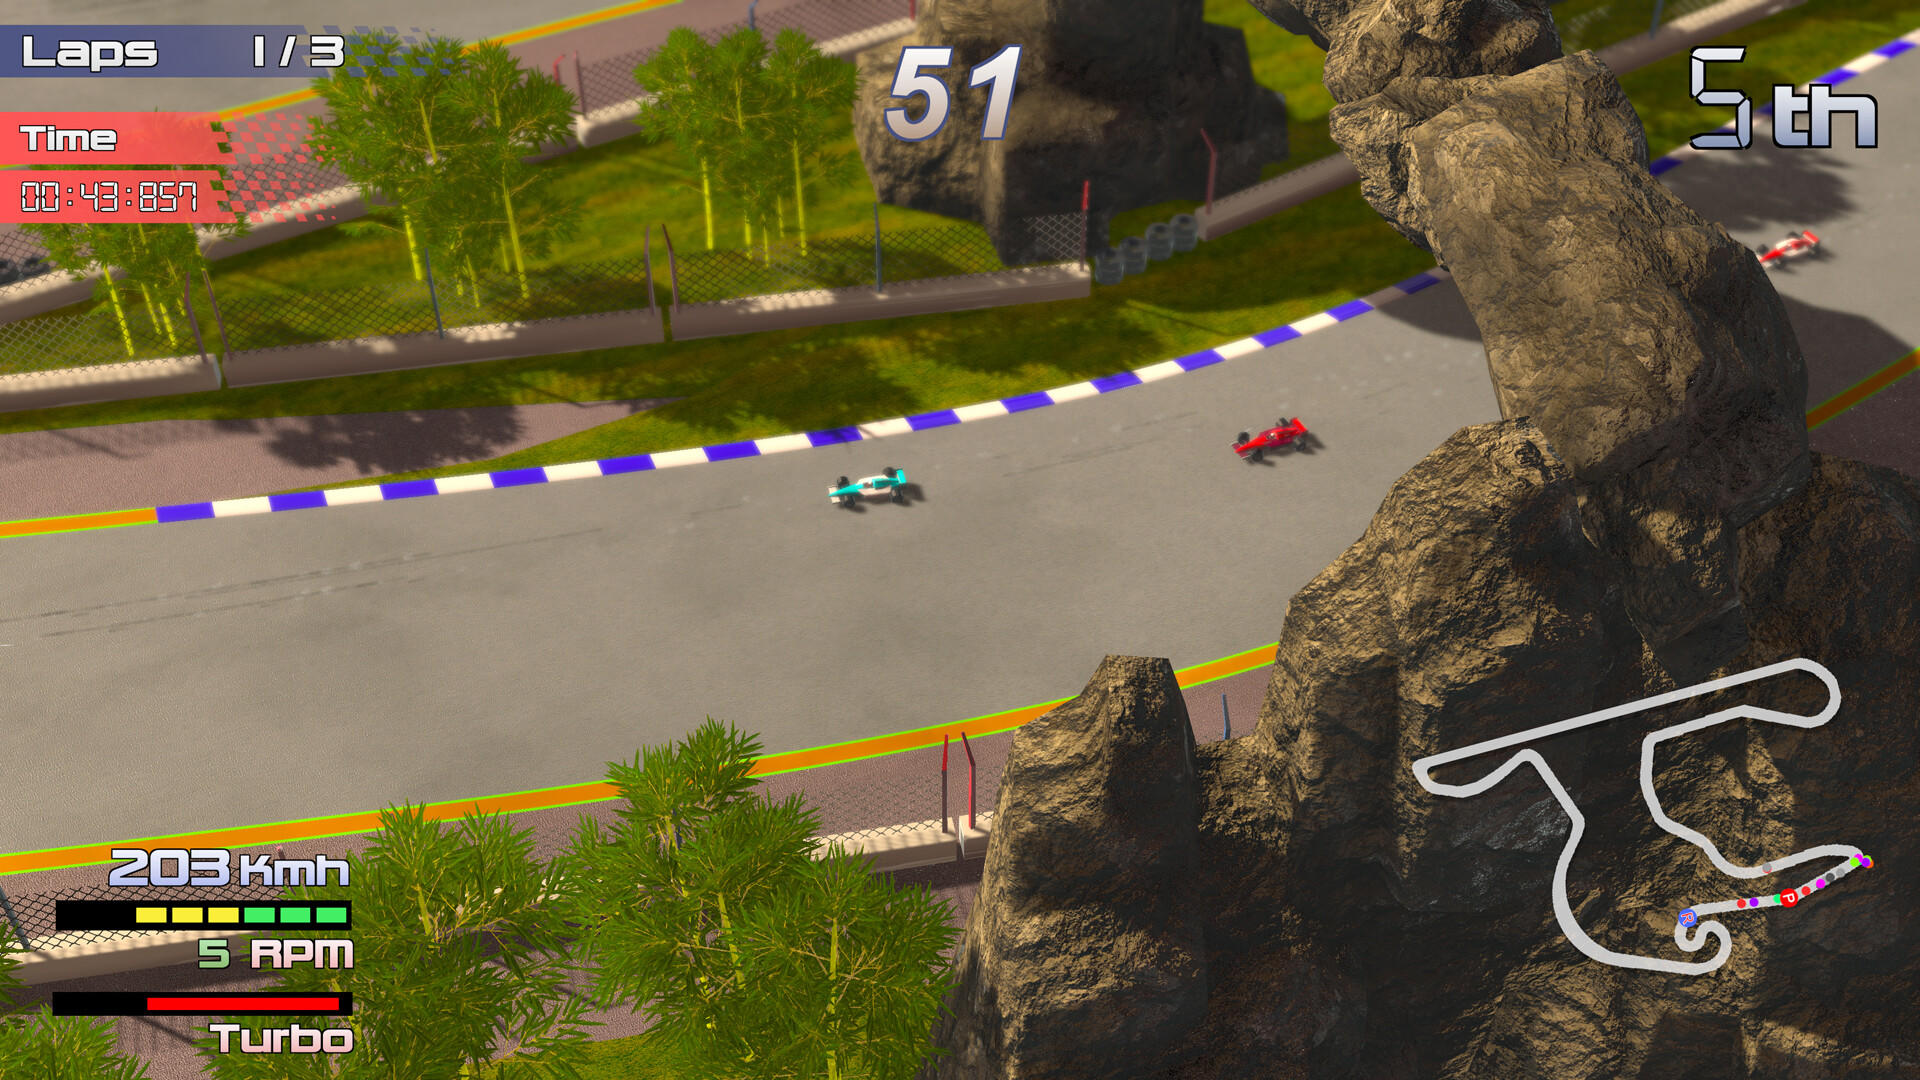 Screenshot of Grand Prix Rock 'N Racing